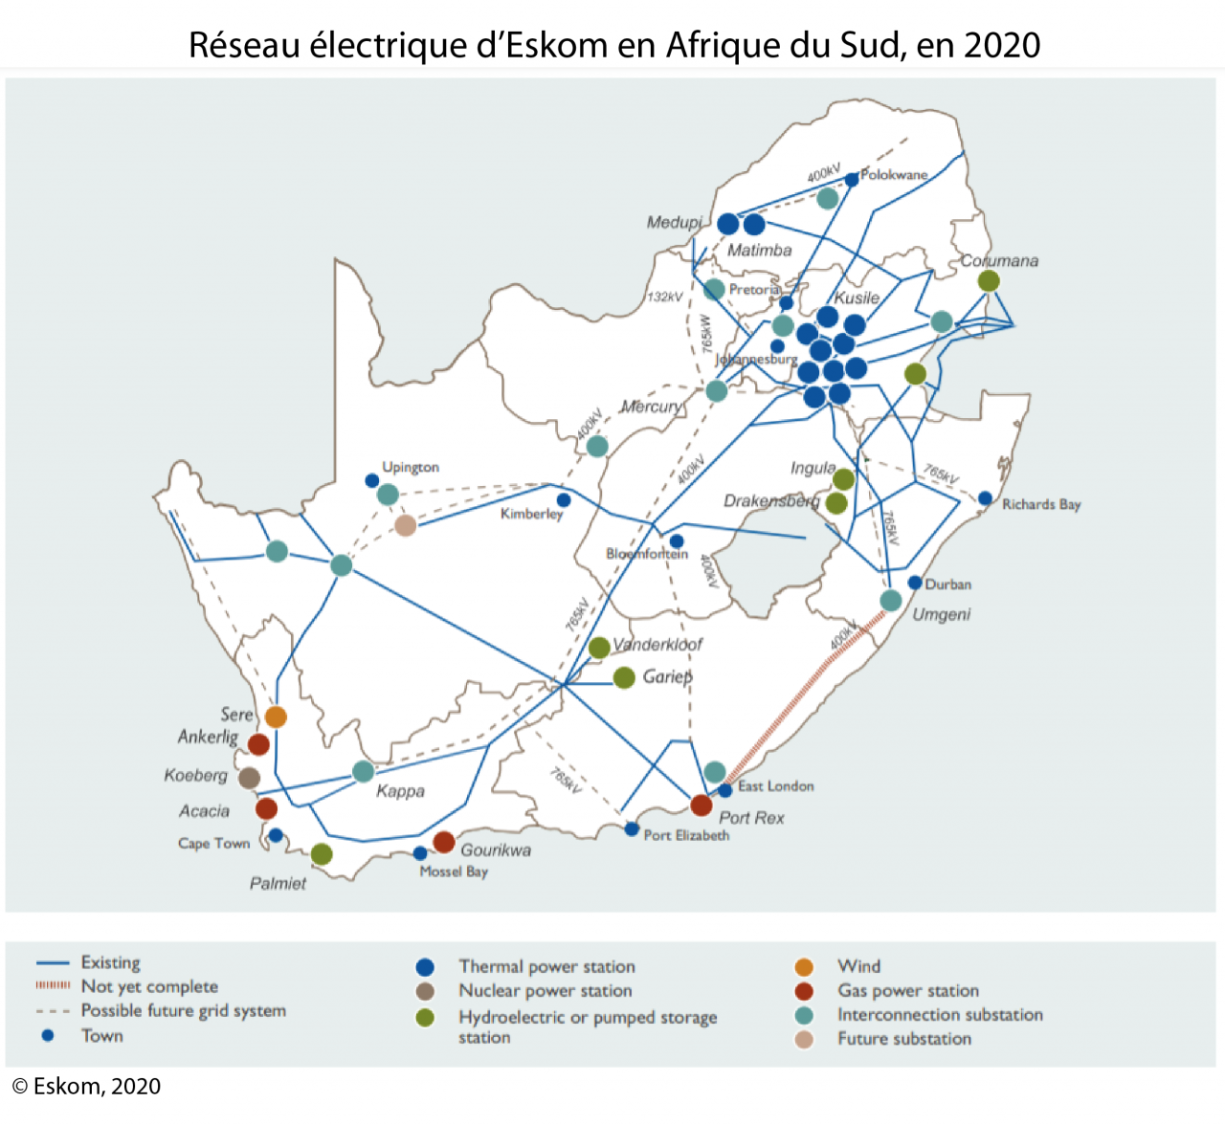 Réseau électrique d'Eskom en Afrique du Sud, en 2020